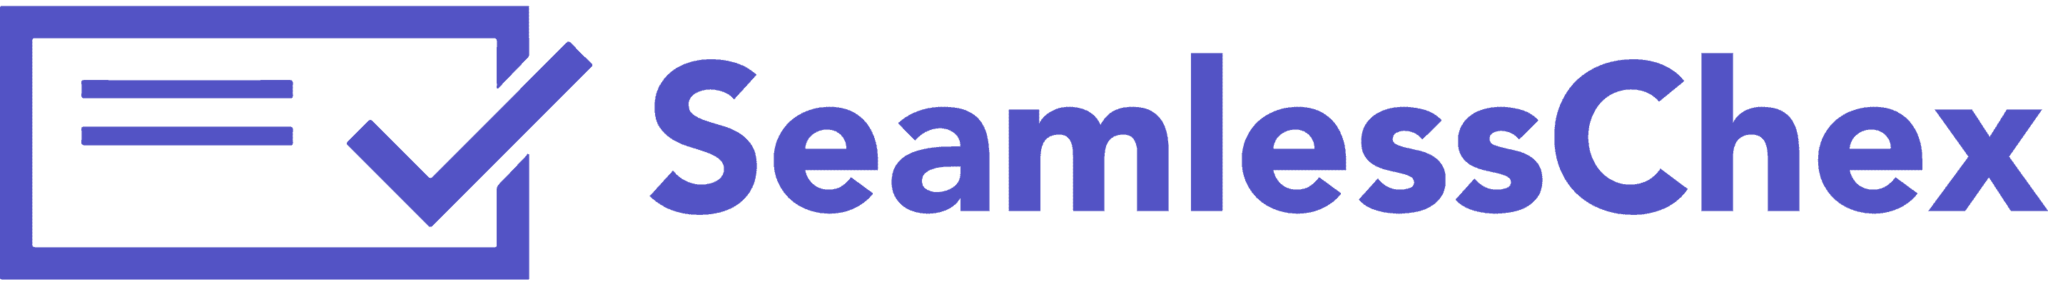 SeamlessChex-logo